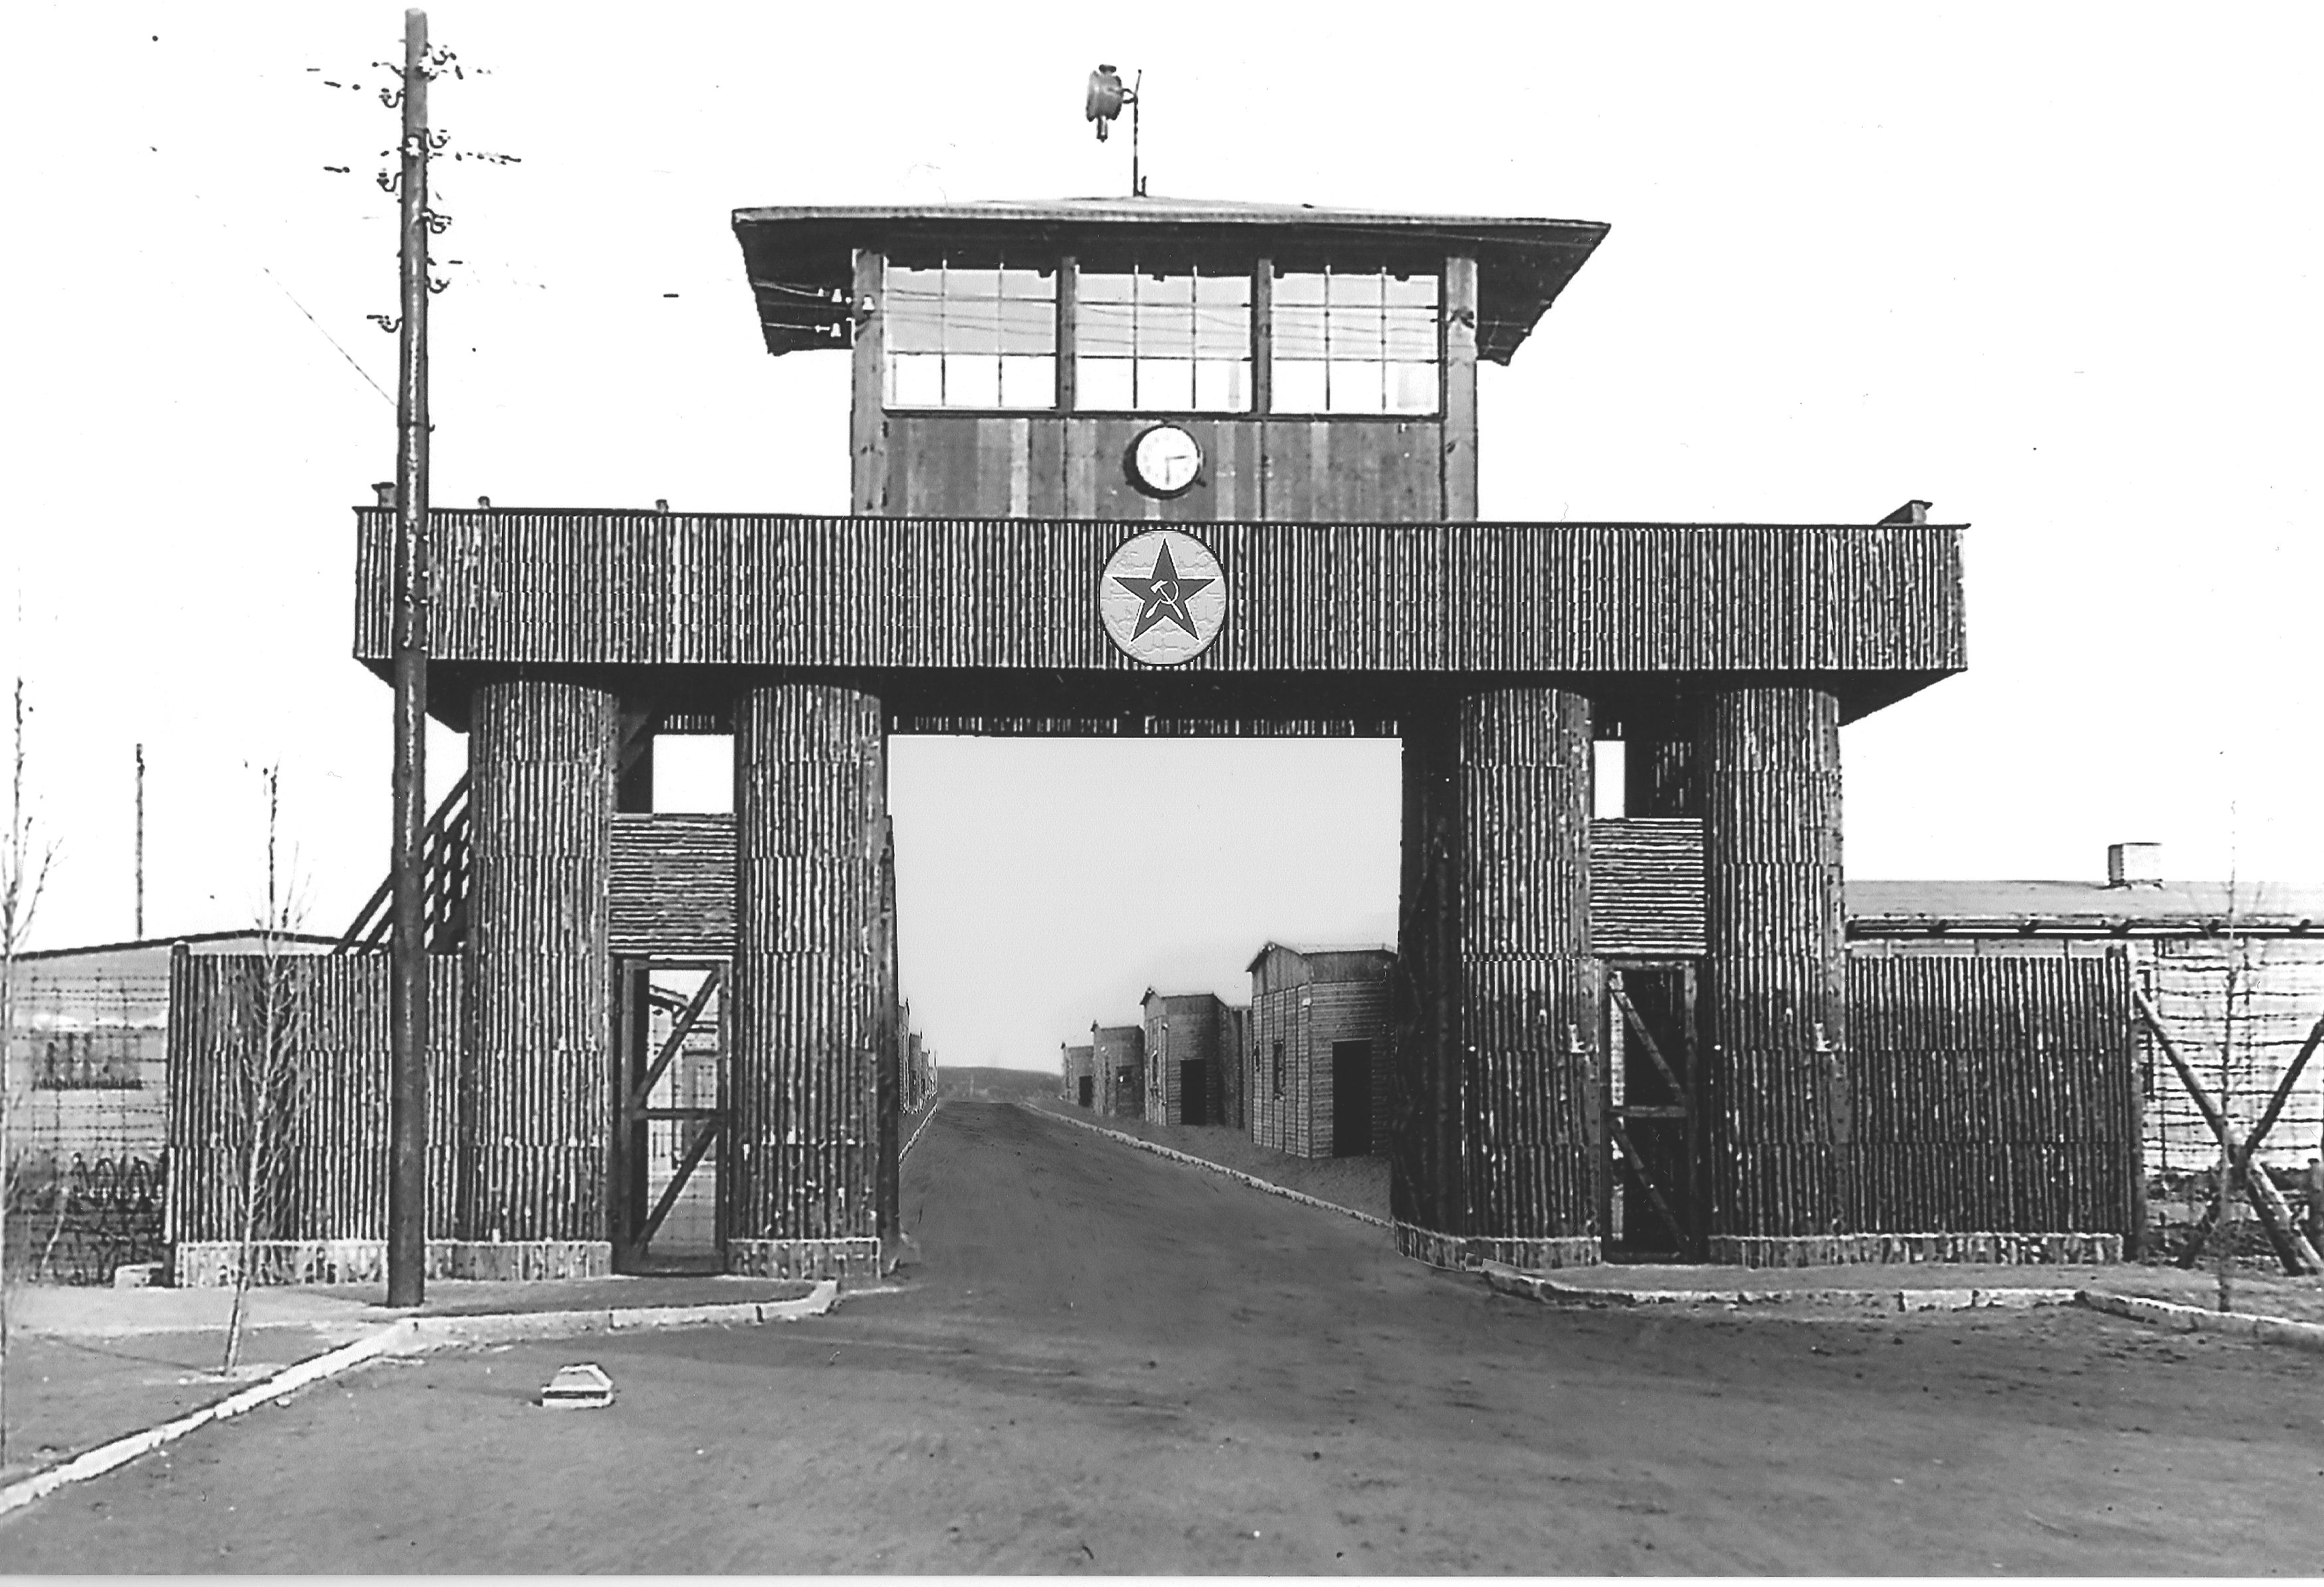 Mühlberg, a szovjet haláltábor bejárata - 1945. (Dr. Slachta Krisztina gyűjtése)